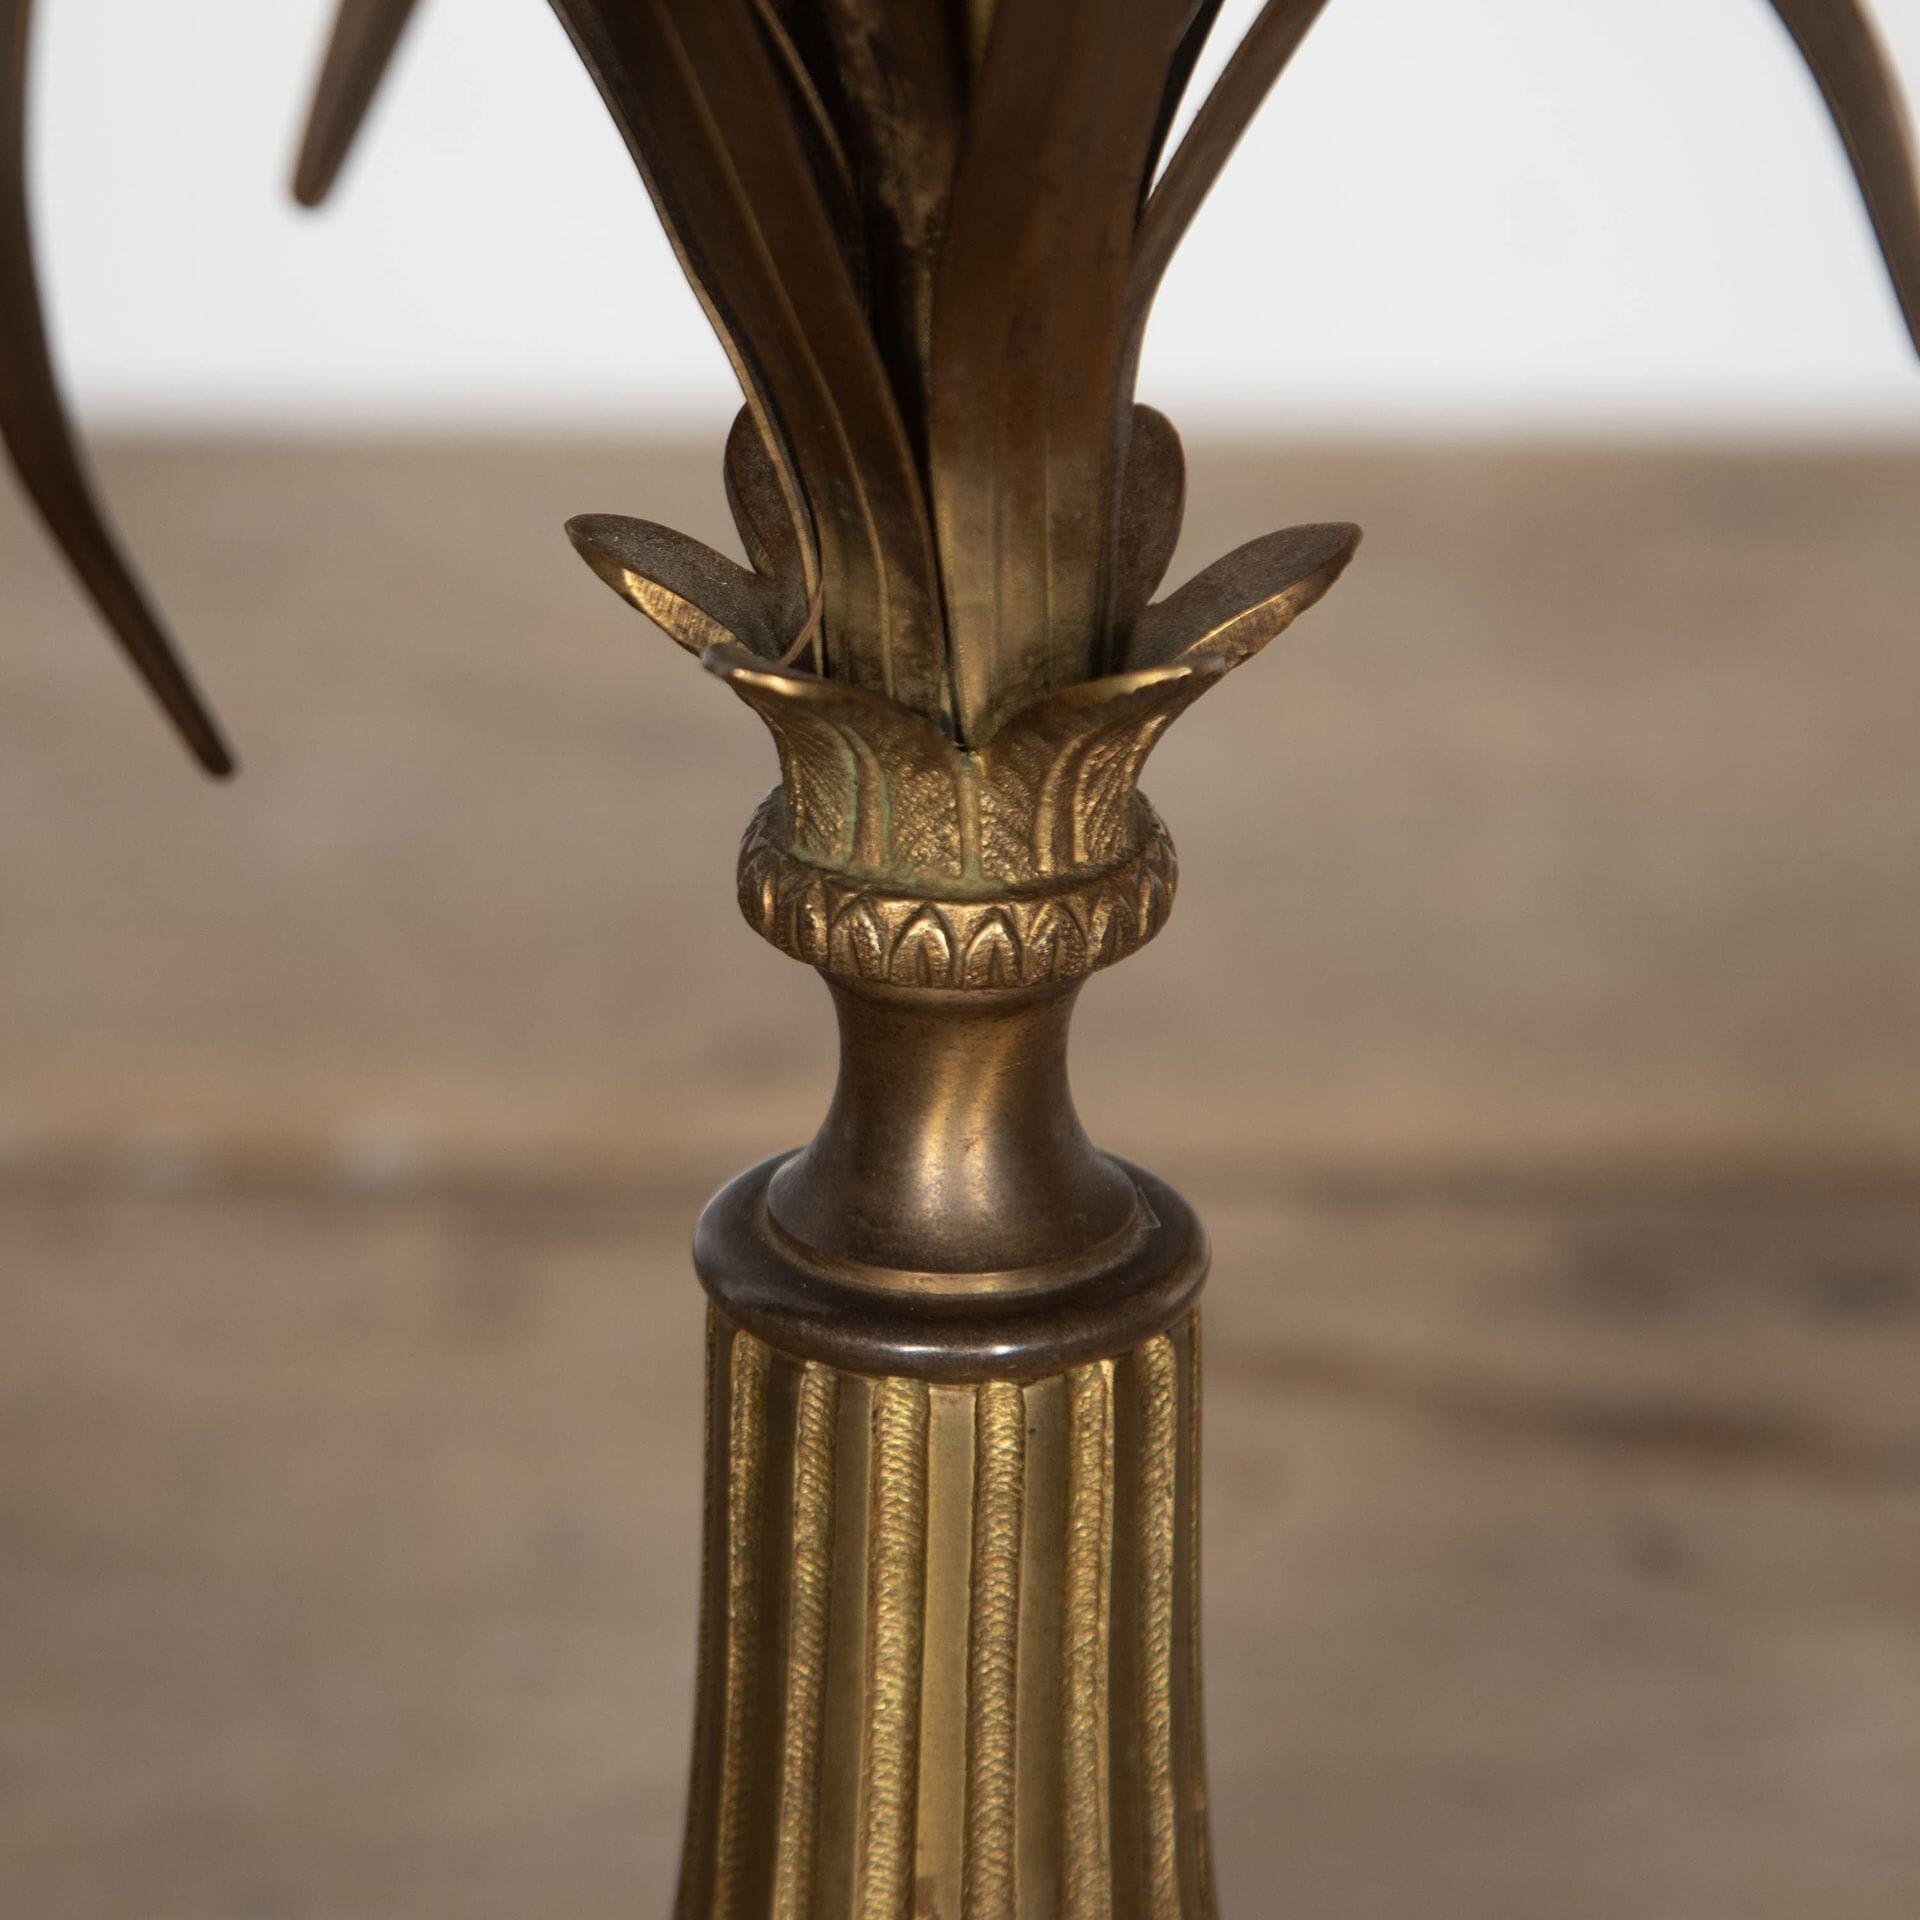 20. Jahrhundert extrem seltene Bronze Maison Charles, (die berühmteste Beleuchtung und Bronze-Gießerei in Frankreich), um die ursprüngliche Bronze-Schirm enthalten. Dieser Artikel hat die PAT-Prüfung gemäß den britischen Normen bestanden.